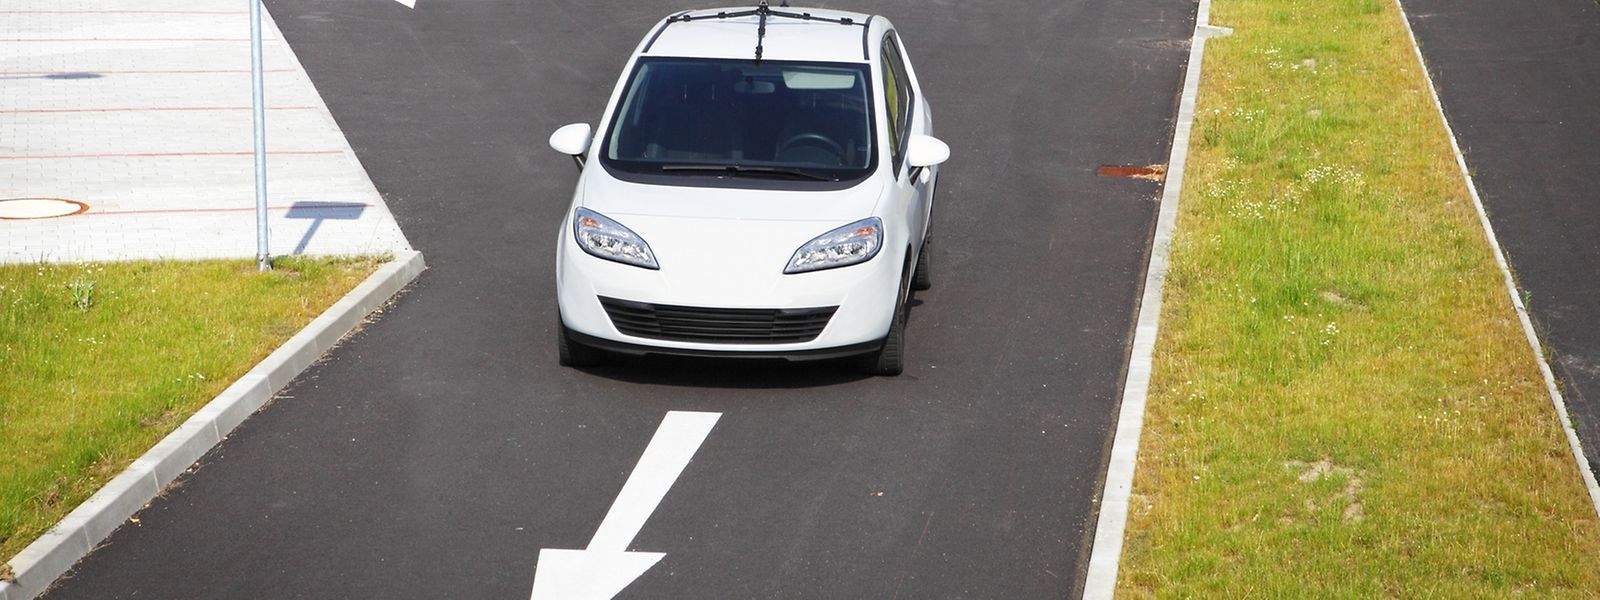 En France, une ordonnance adoptée à l'été par le gouvernement a ouvert la voie à la circulation sur la voie publique de véhicules autonomes pour des expérimentations.